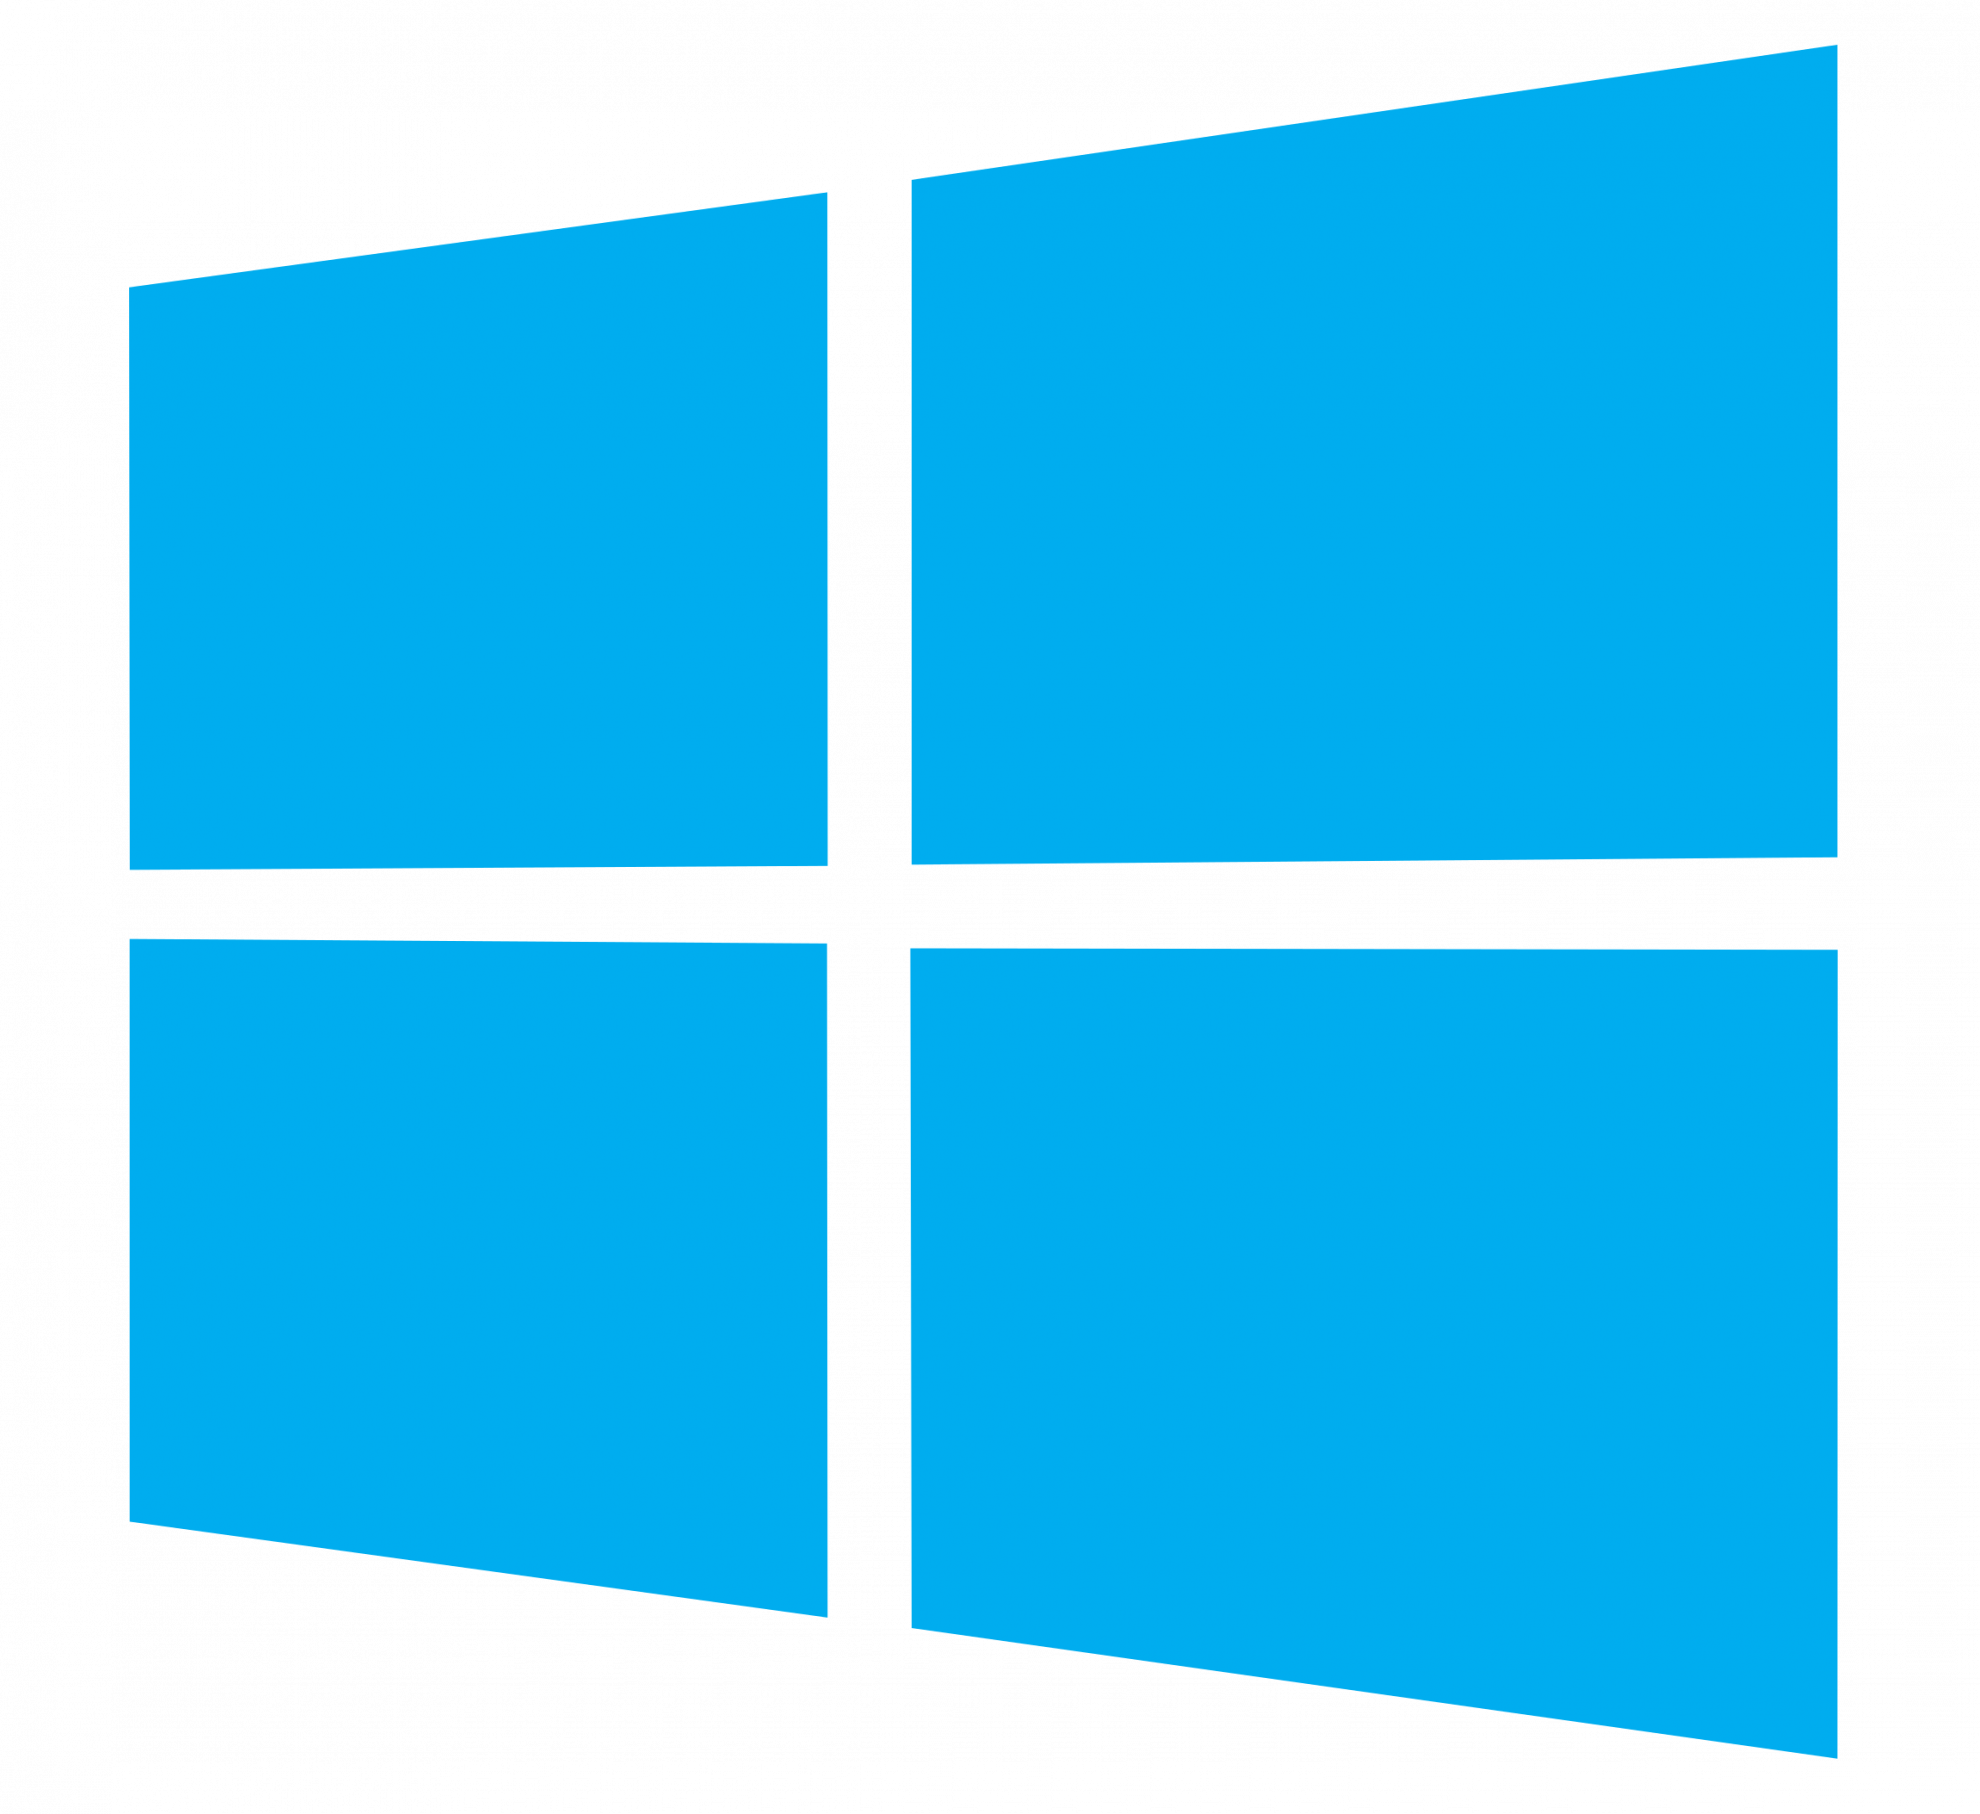 Win icons. Значок виндовс 10. Значок пуска виндовс 10. Логотип Windows. Значок пуск Windows.